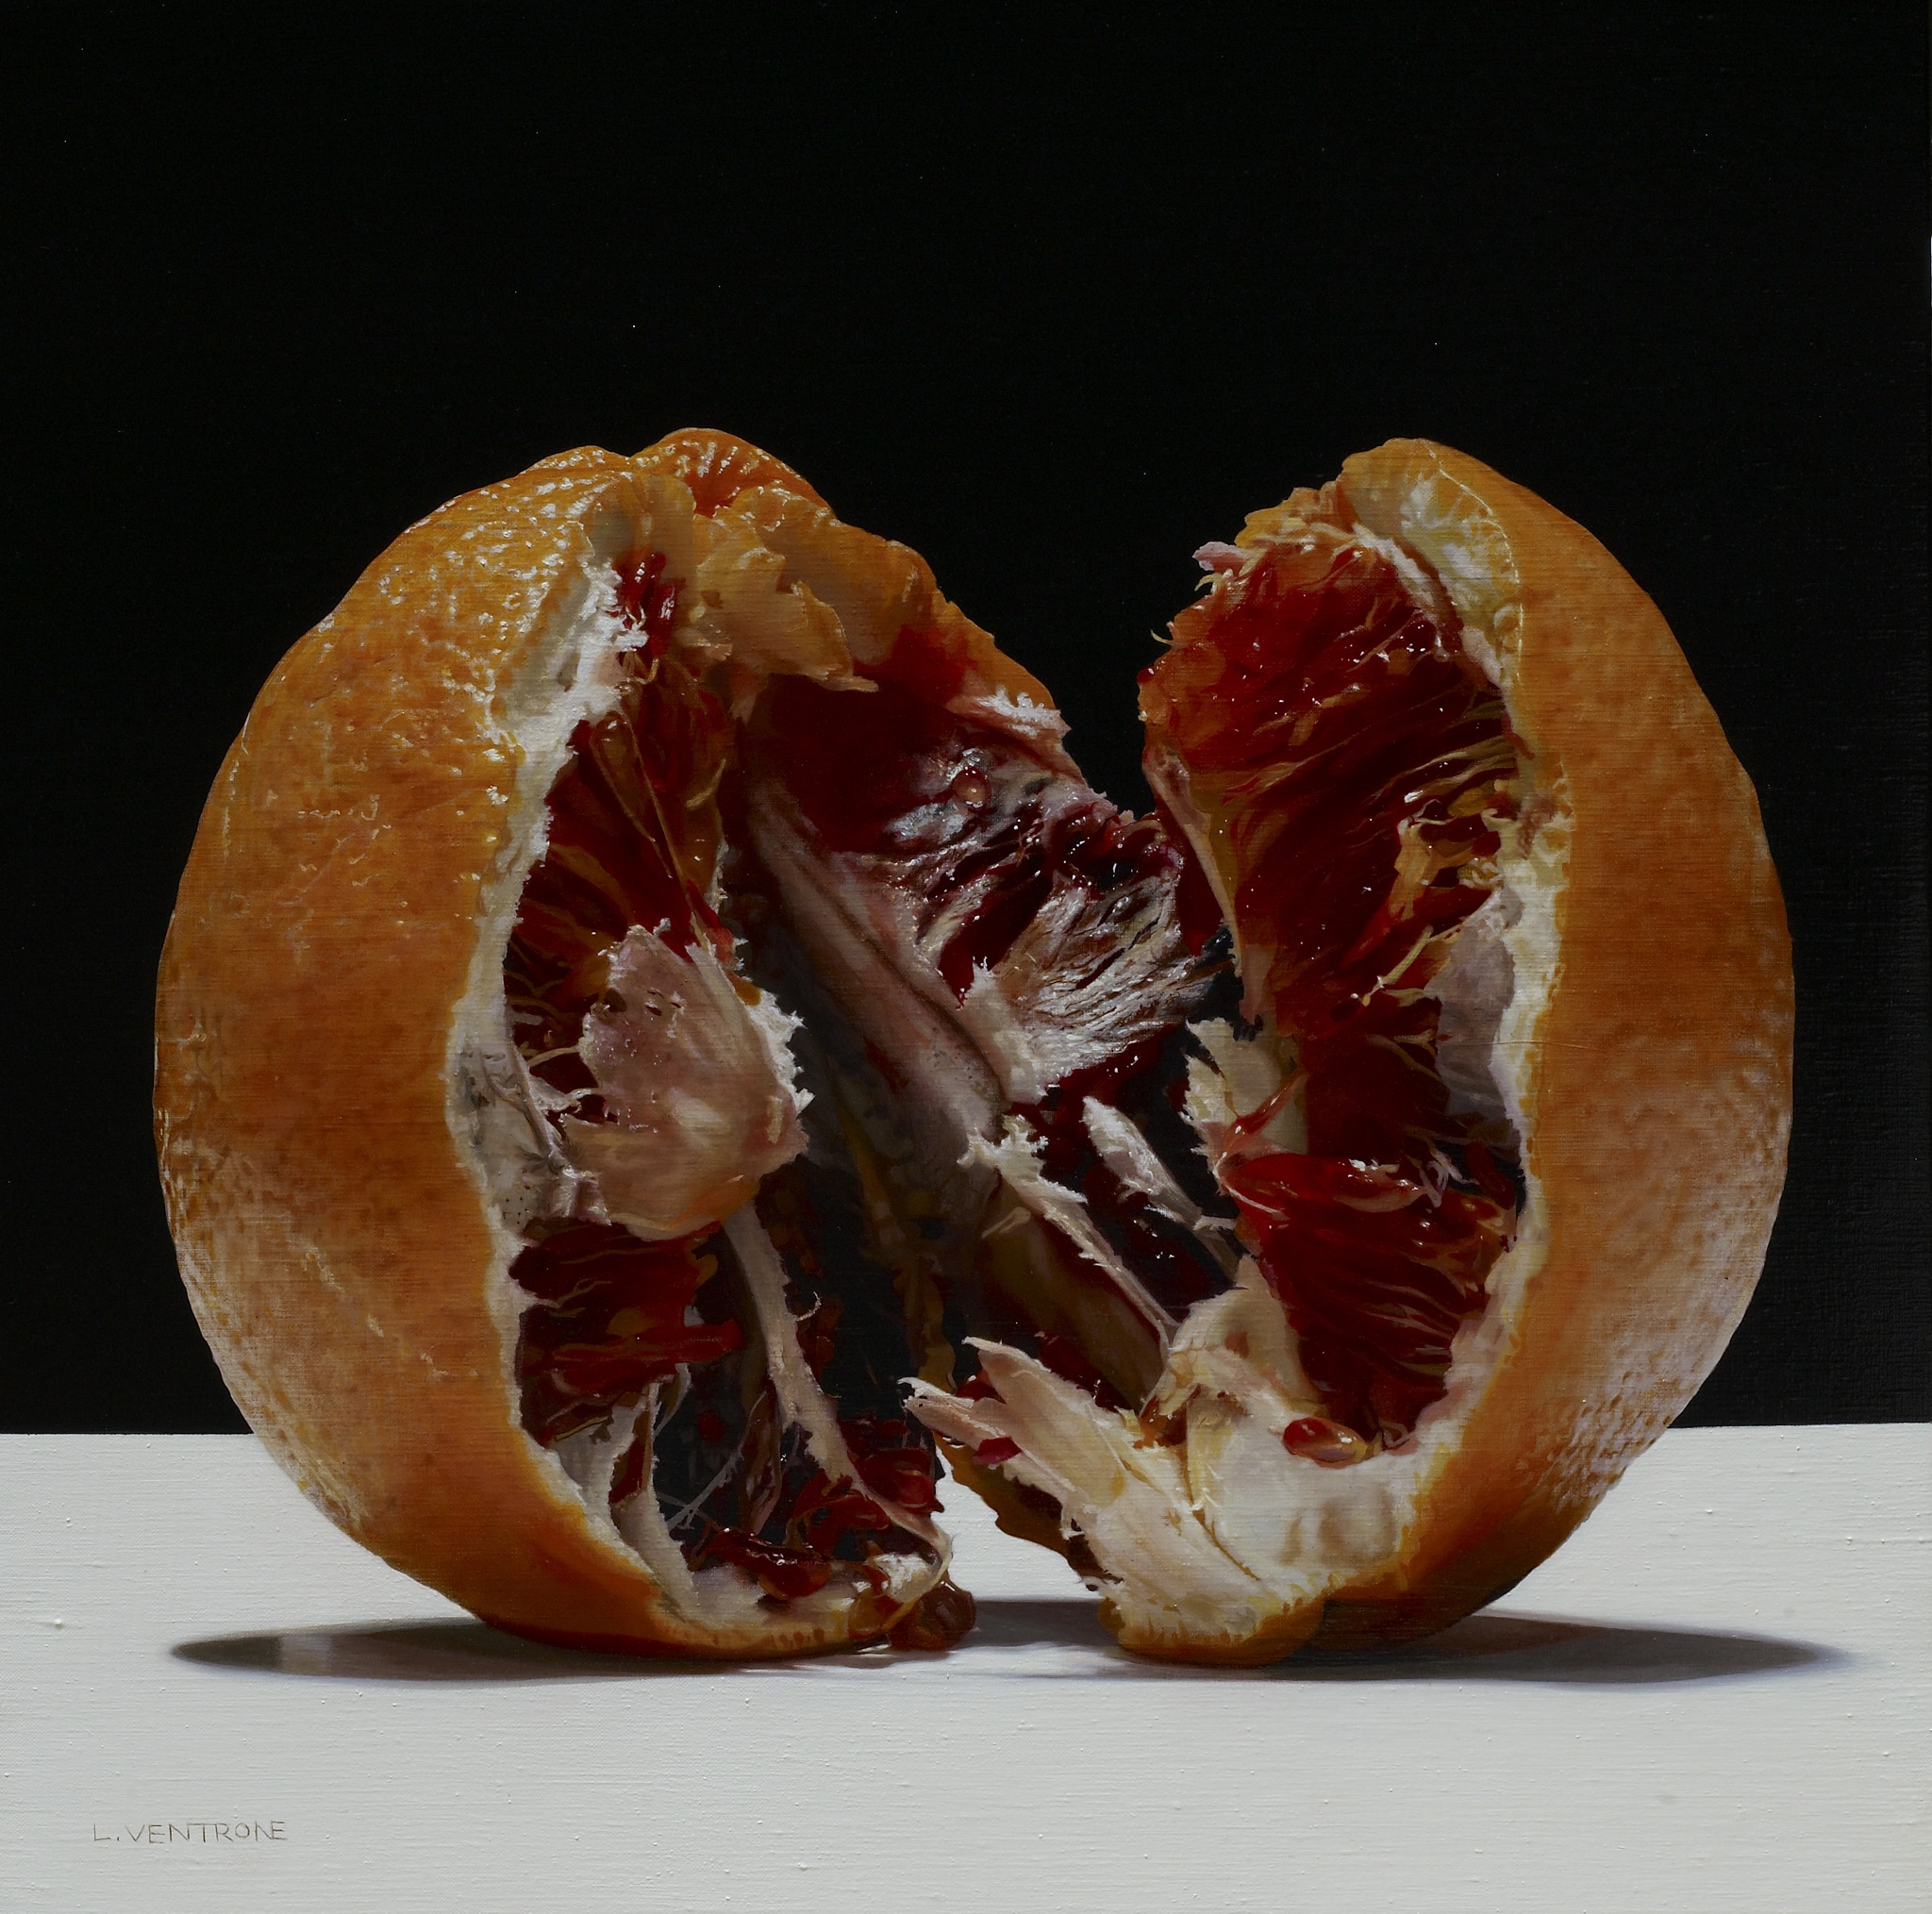 Luciano Ventrone "Tarocco", 2020. Olio su tecnica mista su tela di lino, cm 50 x 50 